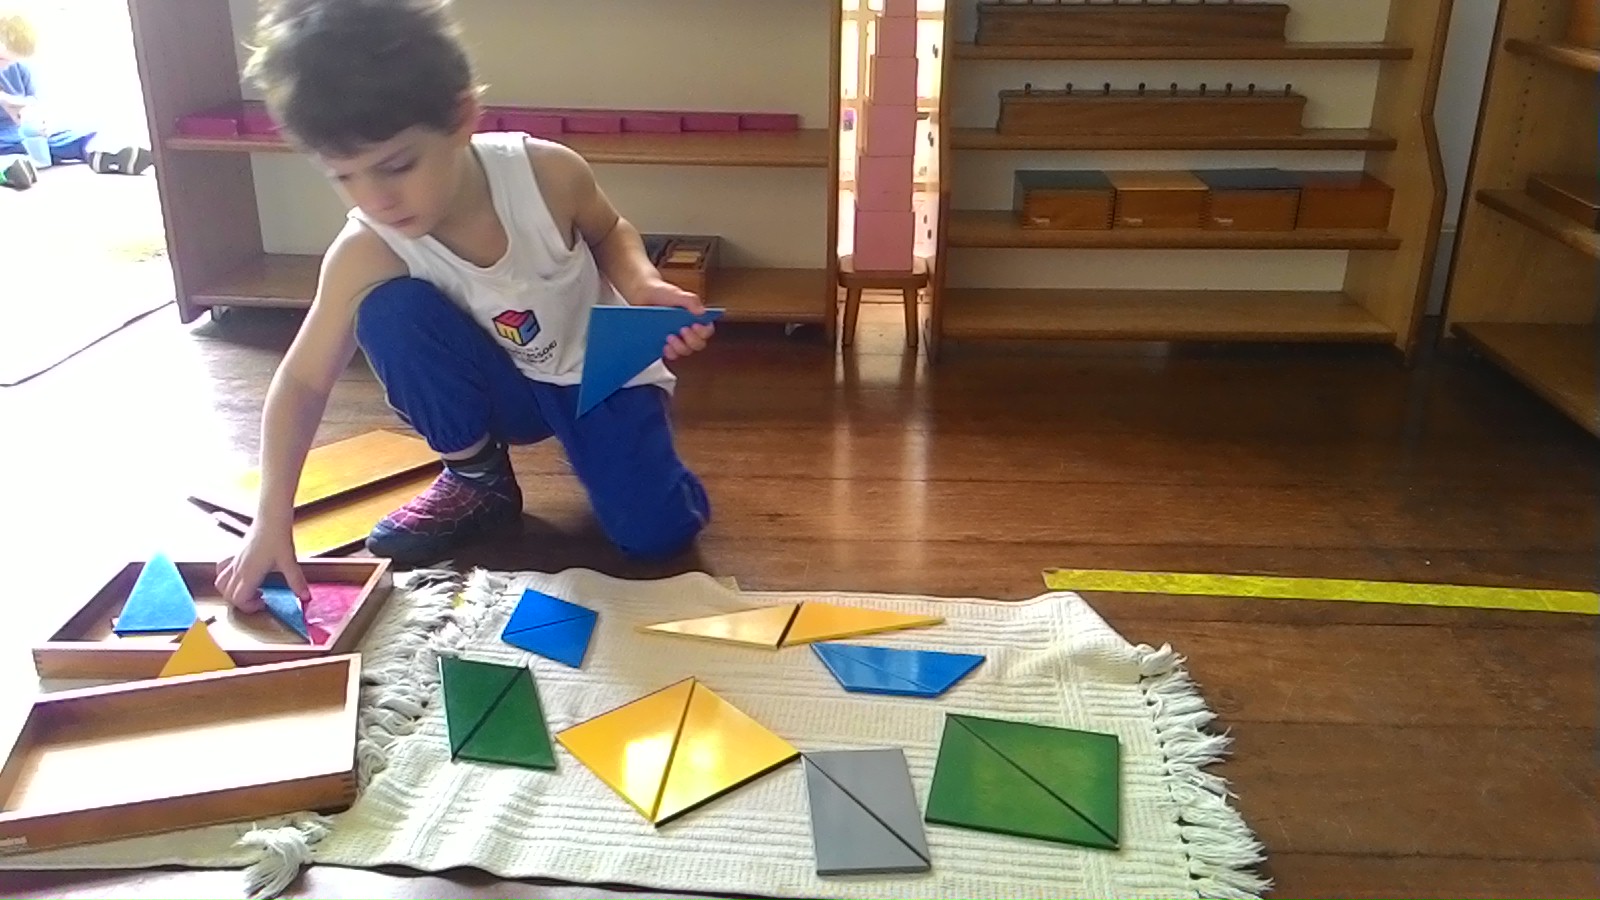 Caixa de Triangulação Montessori